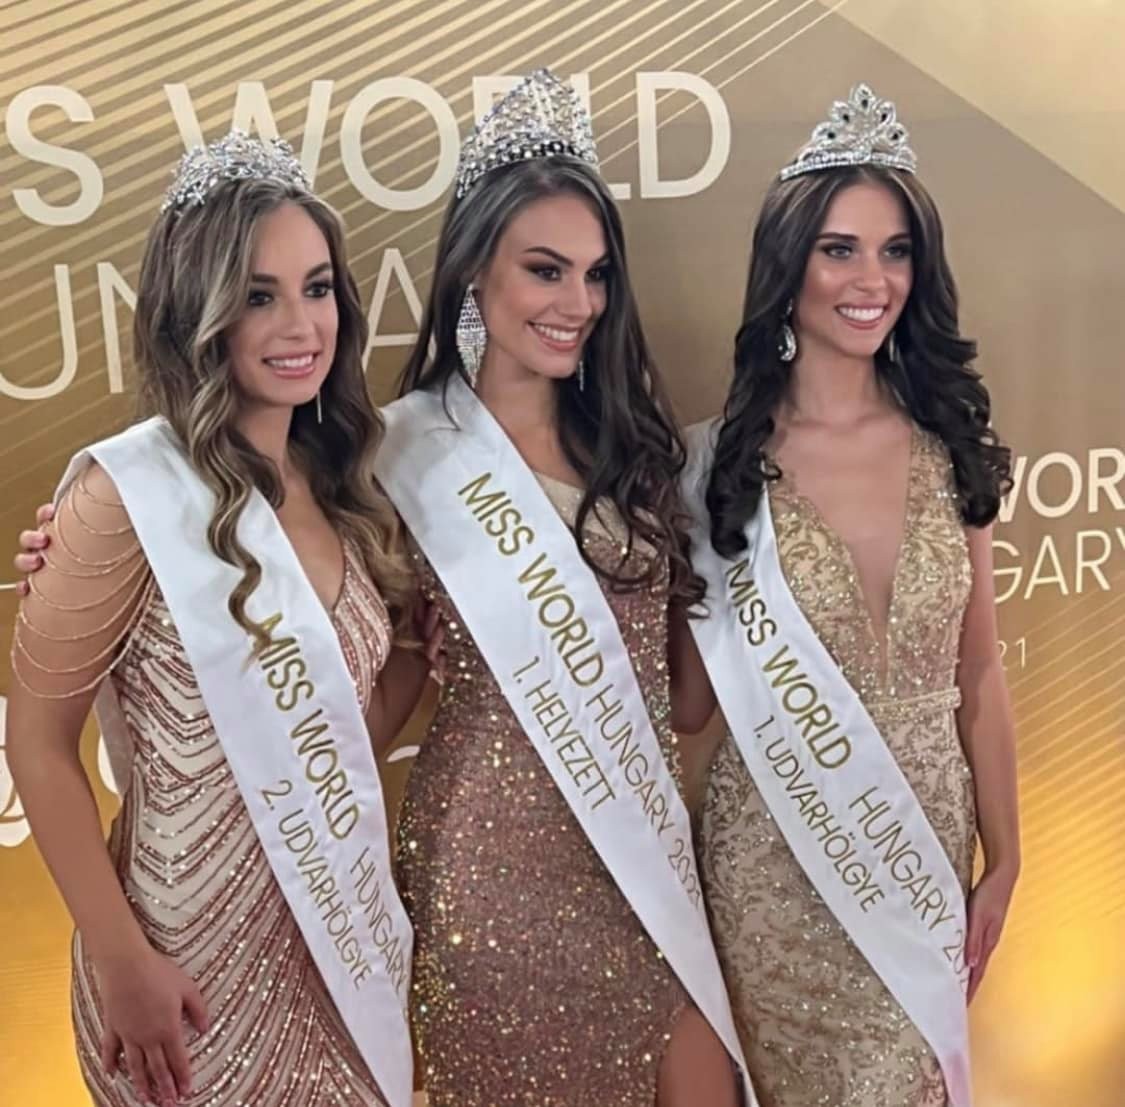 Nagykanizsai lány lett a Miss World Hungary győztese